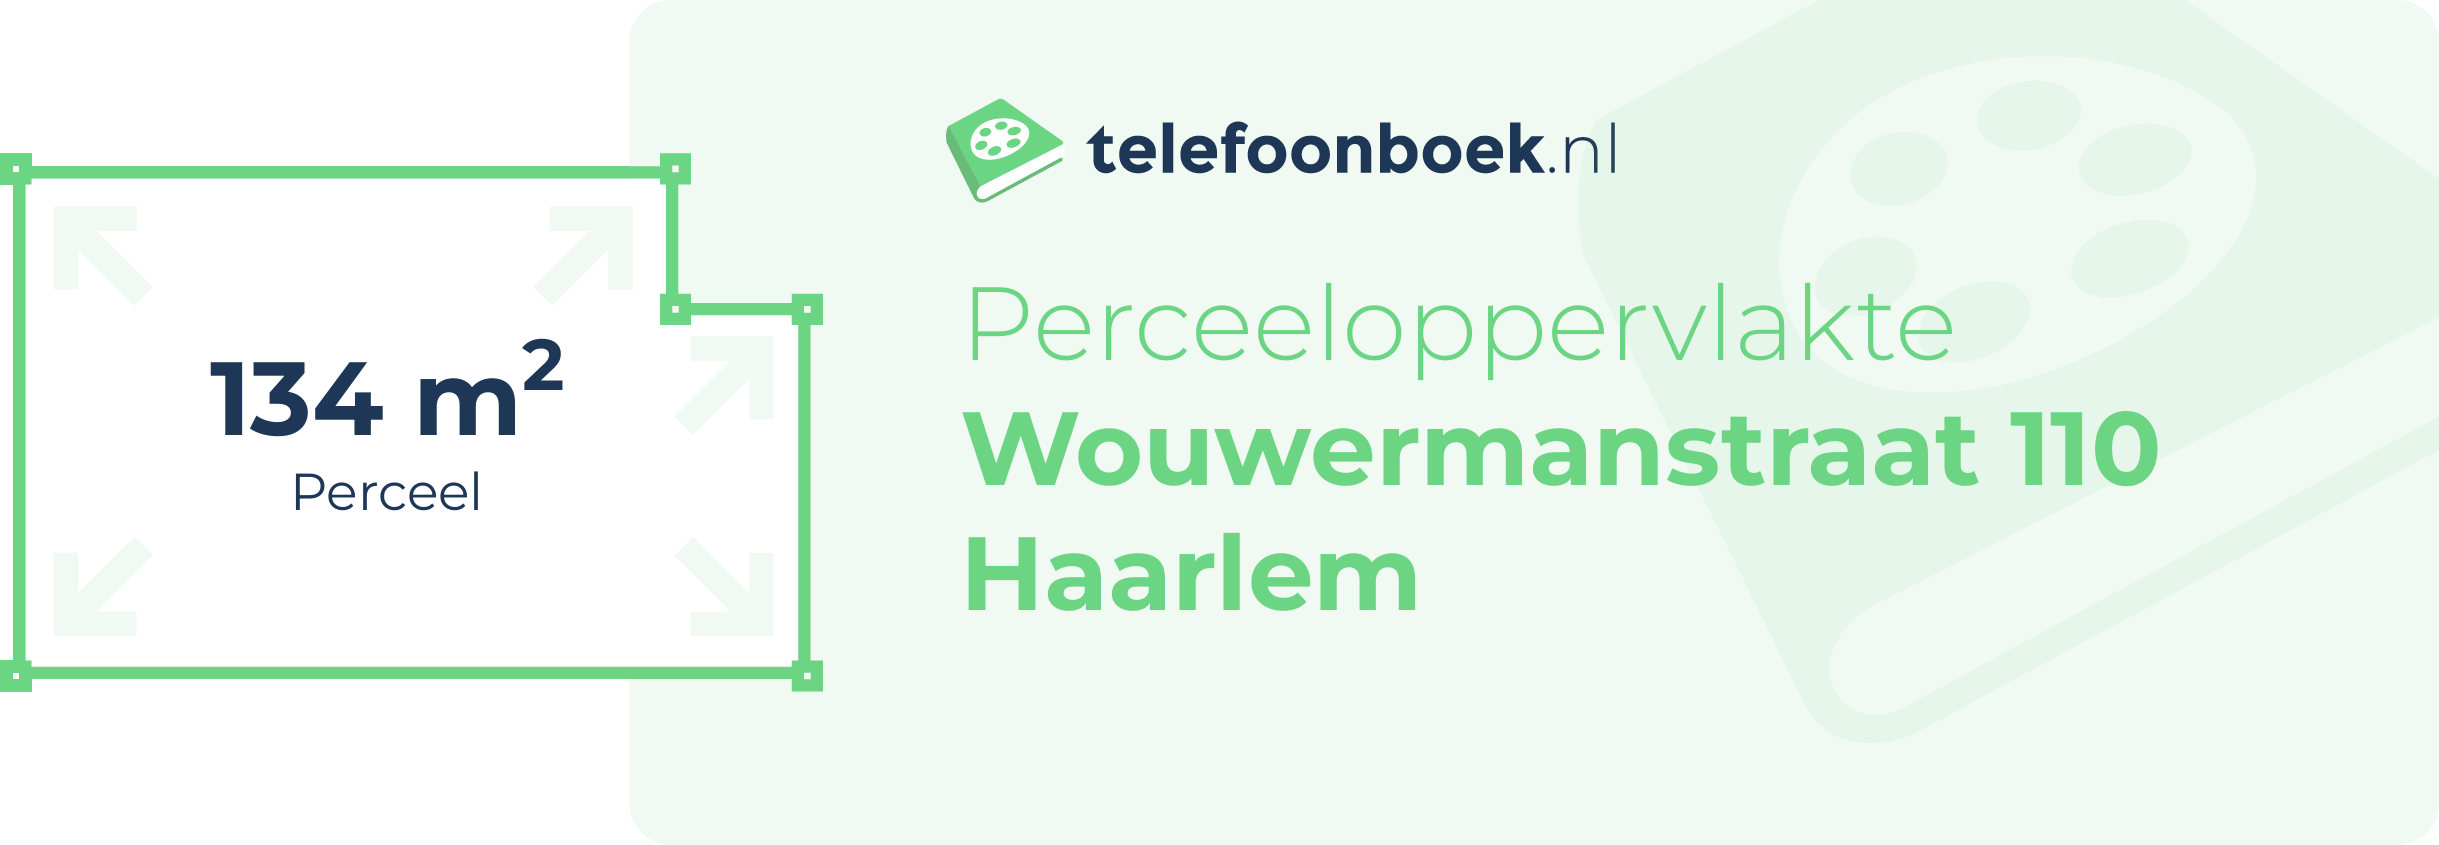 Perceeloppervlakte Wouwermanstraat 110 Haarlem